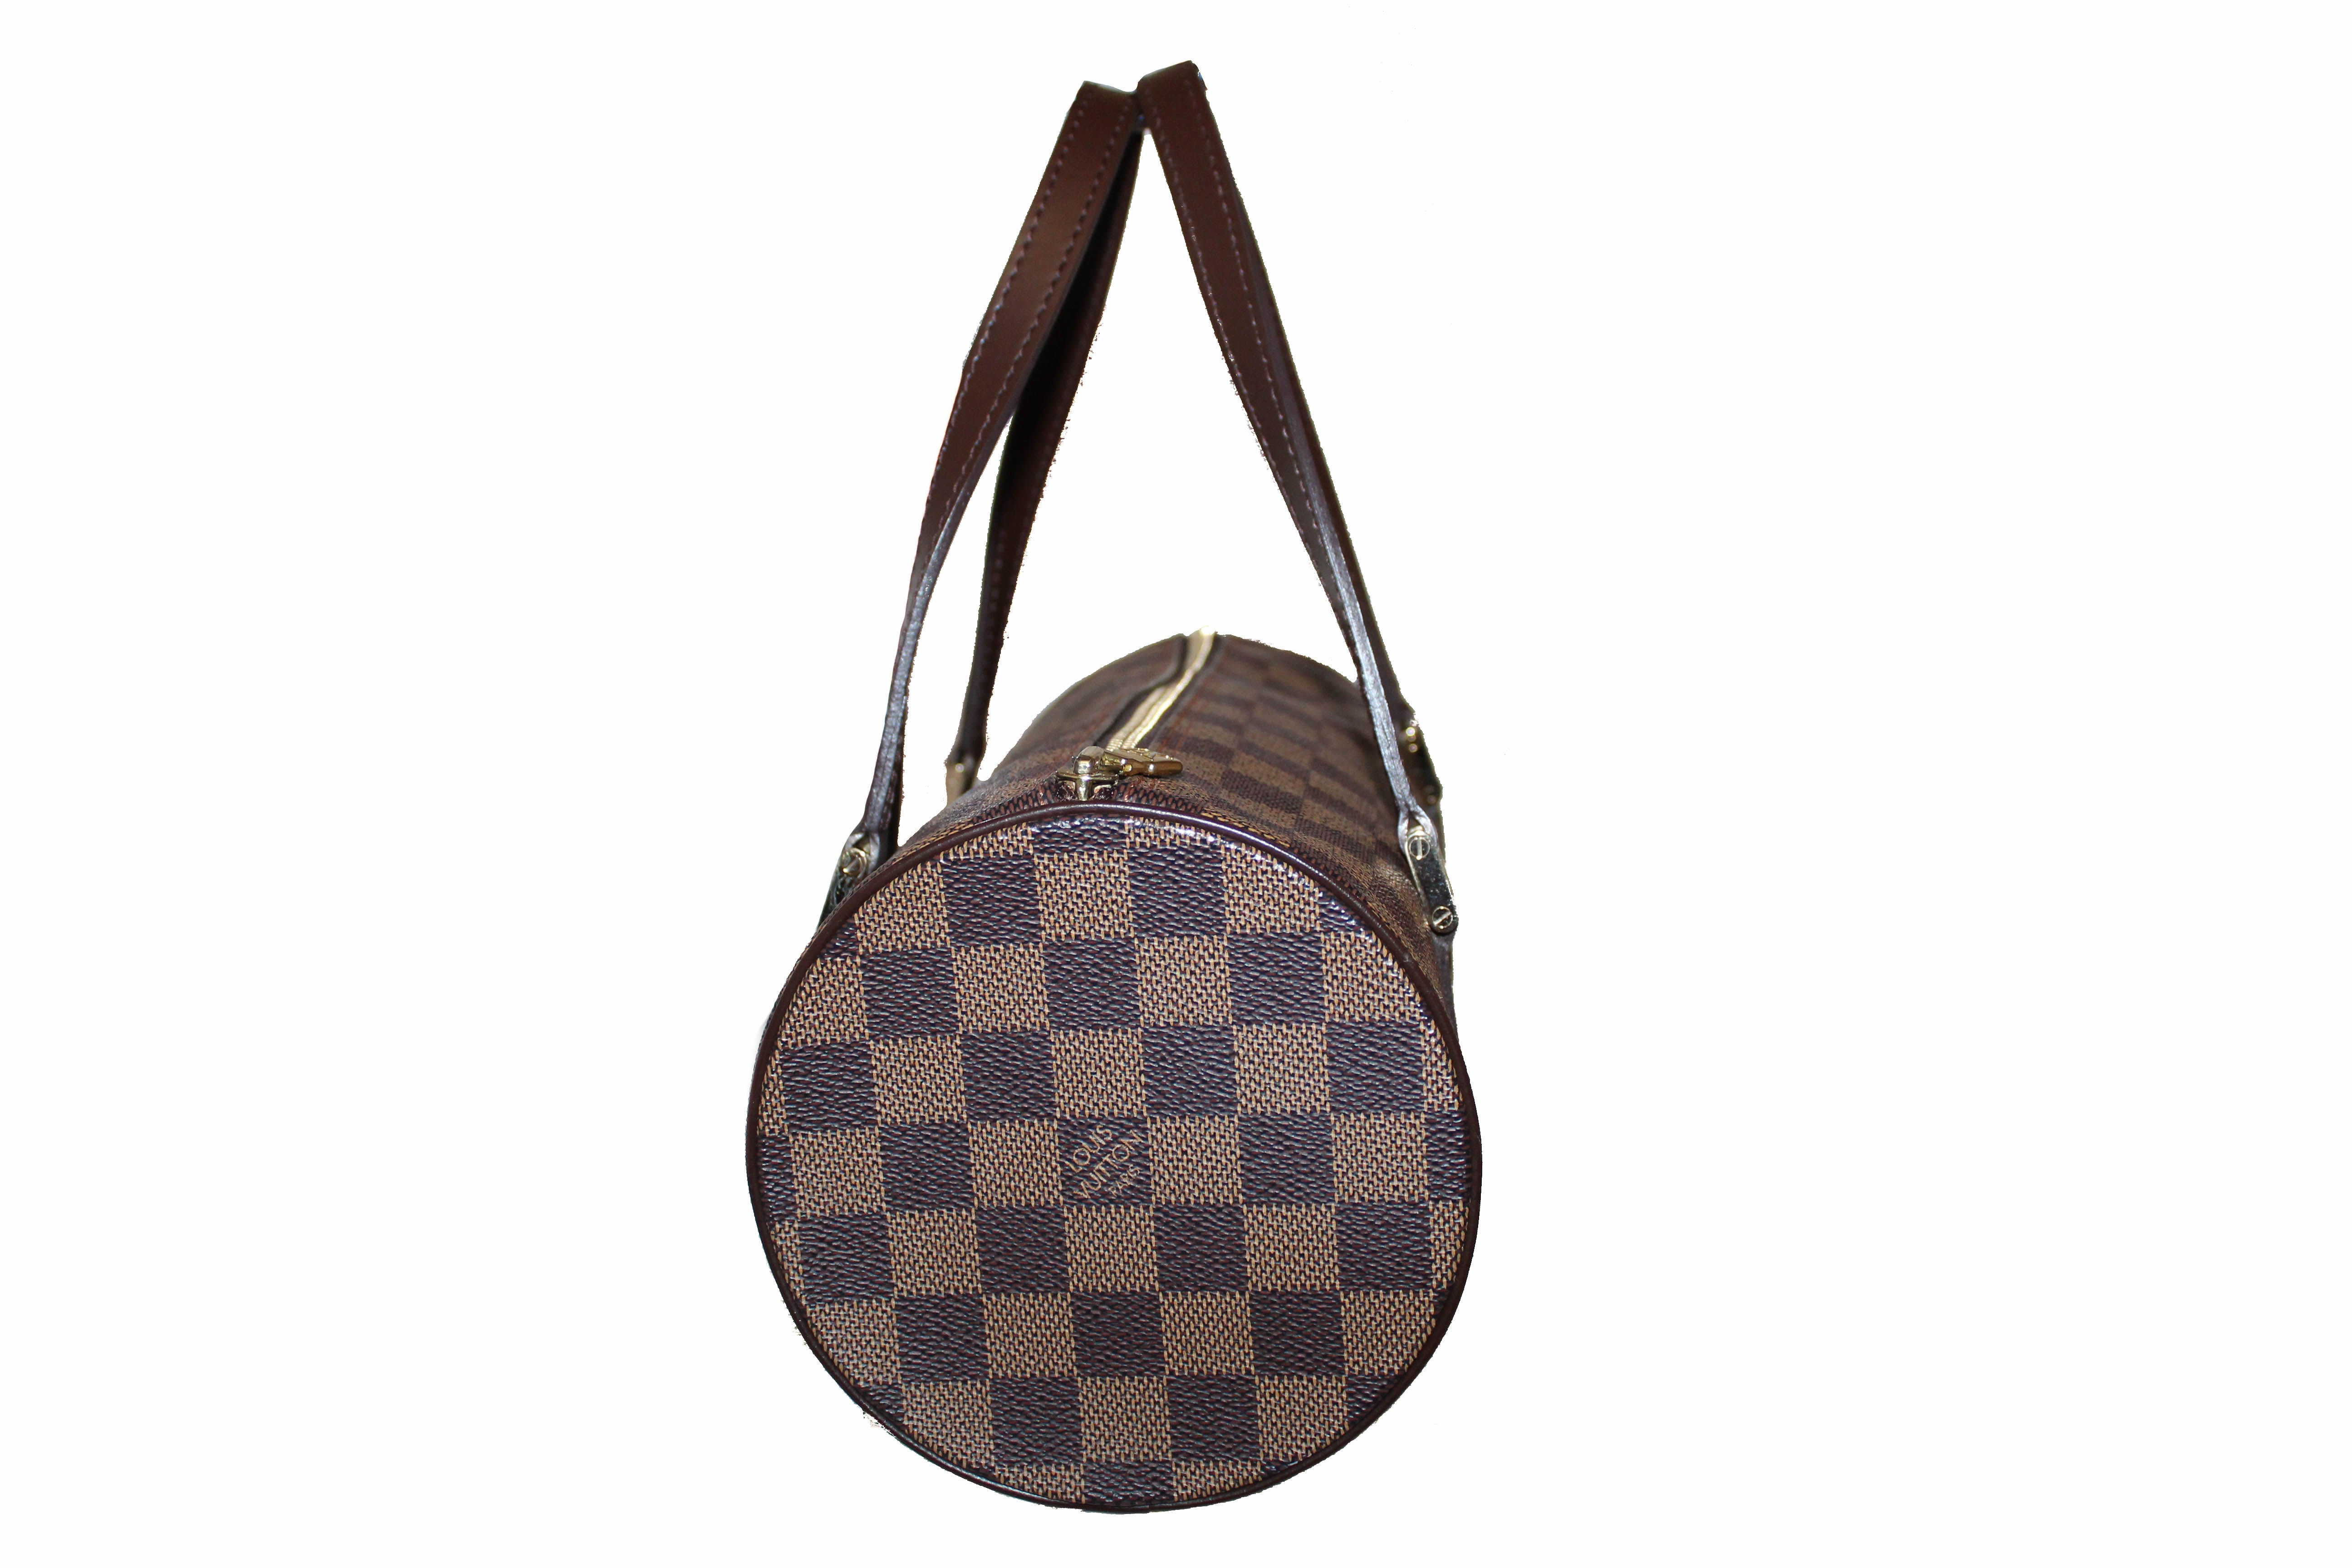 Authentic Louis Vuitton Damier Ebene Papillon 26 Handbag – Paris Station Shop